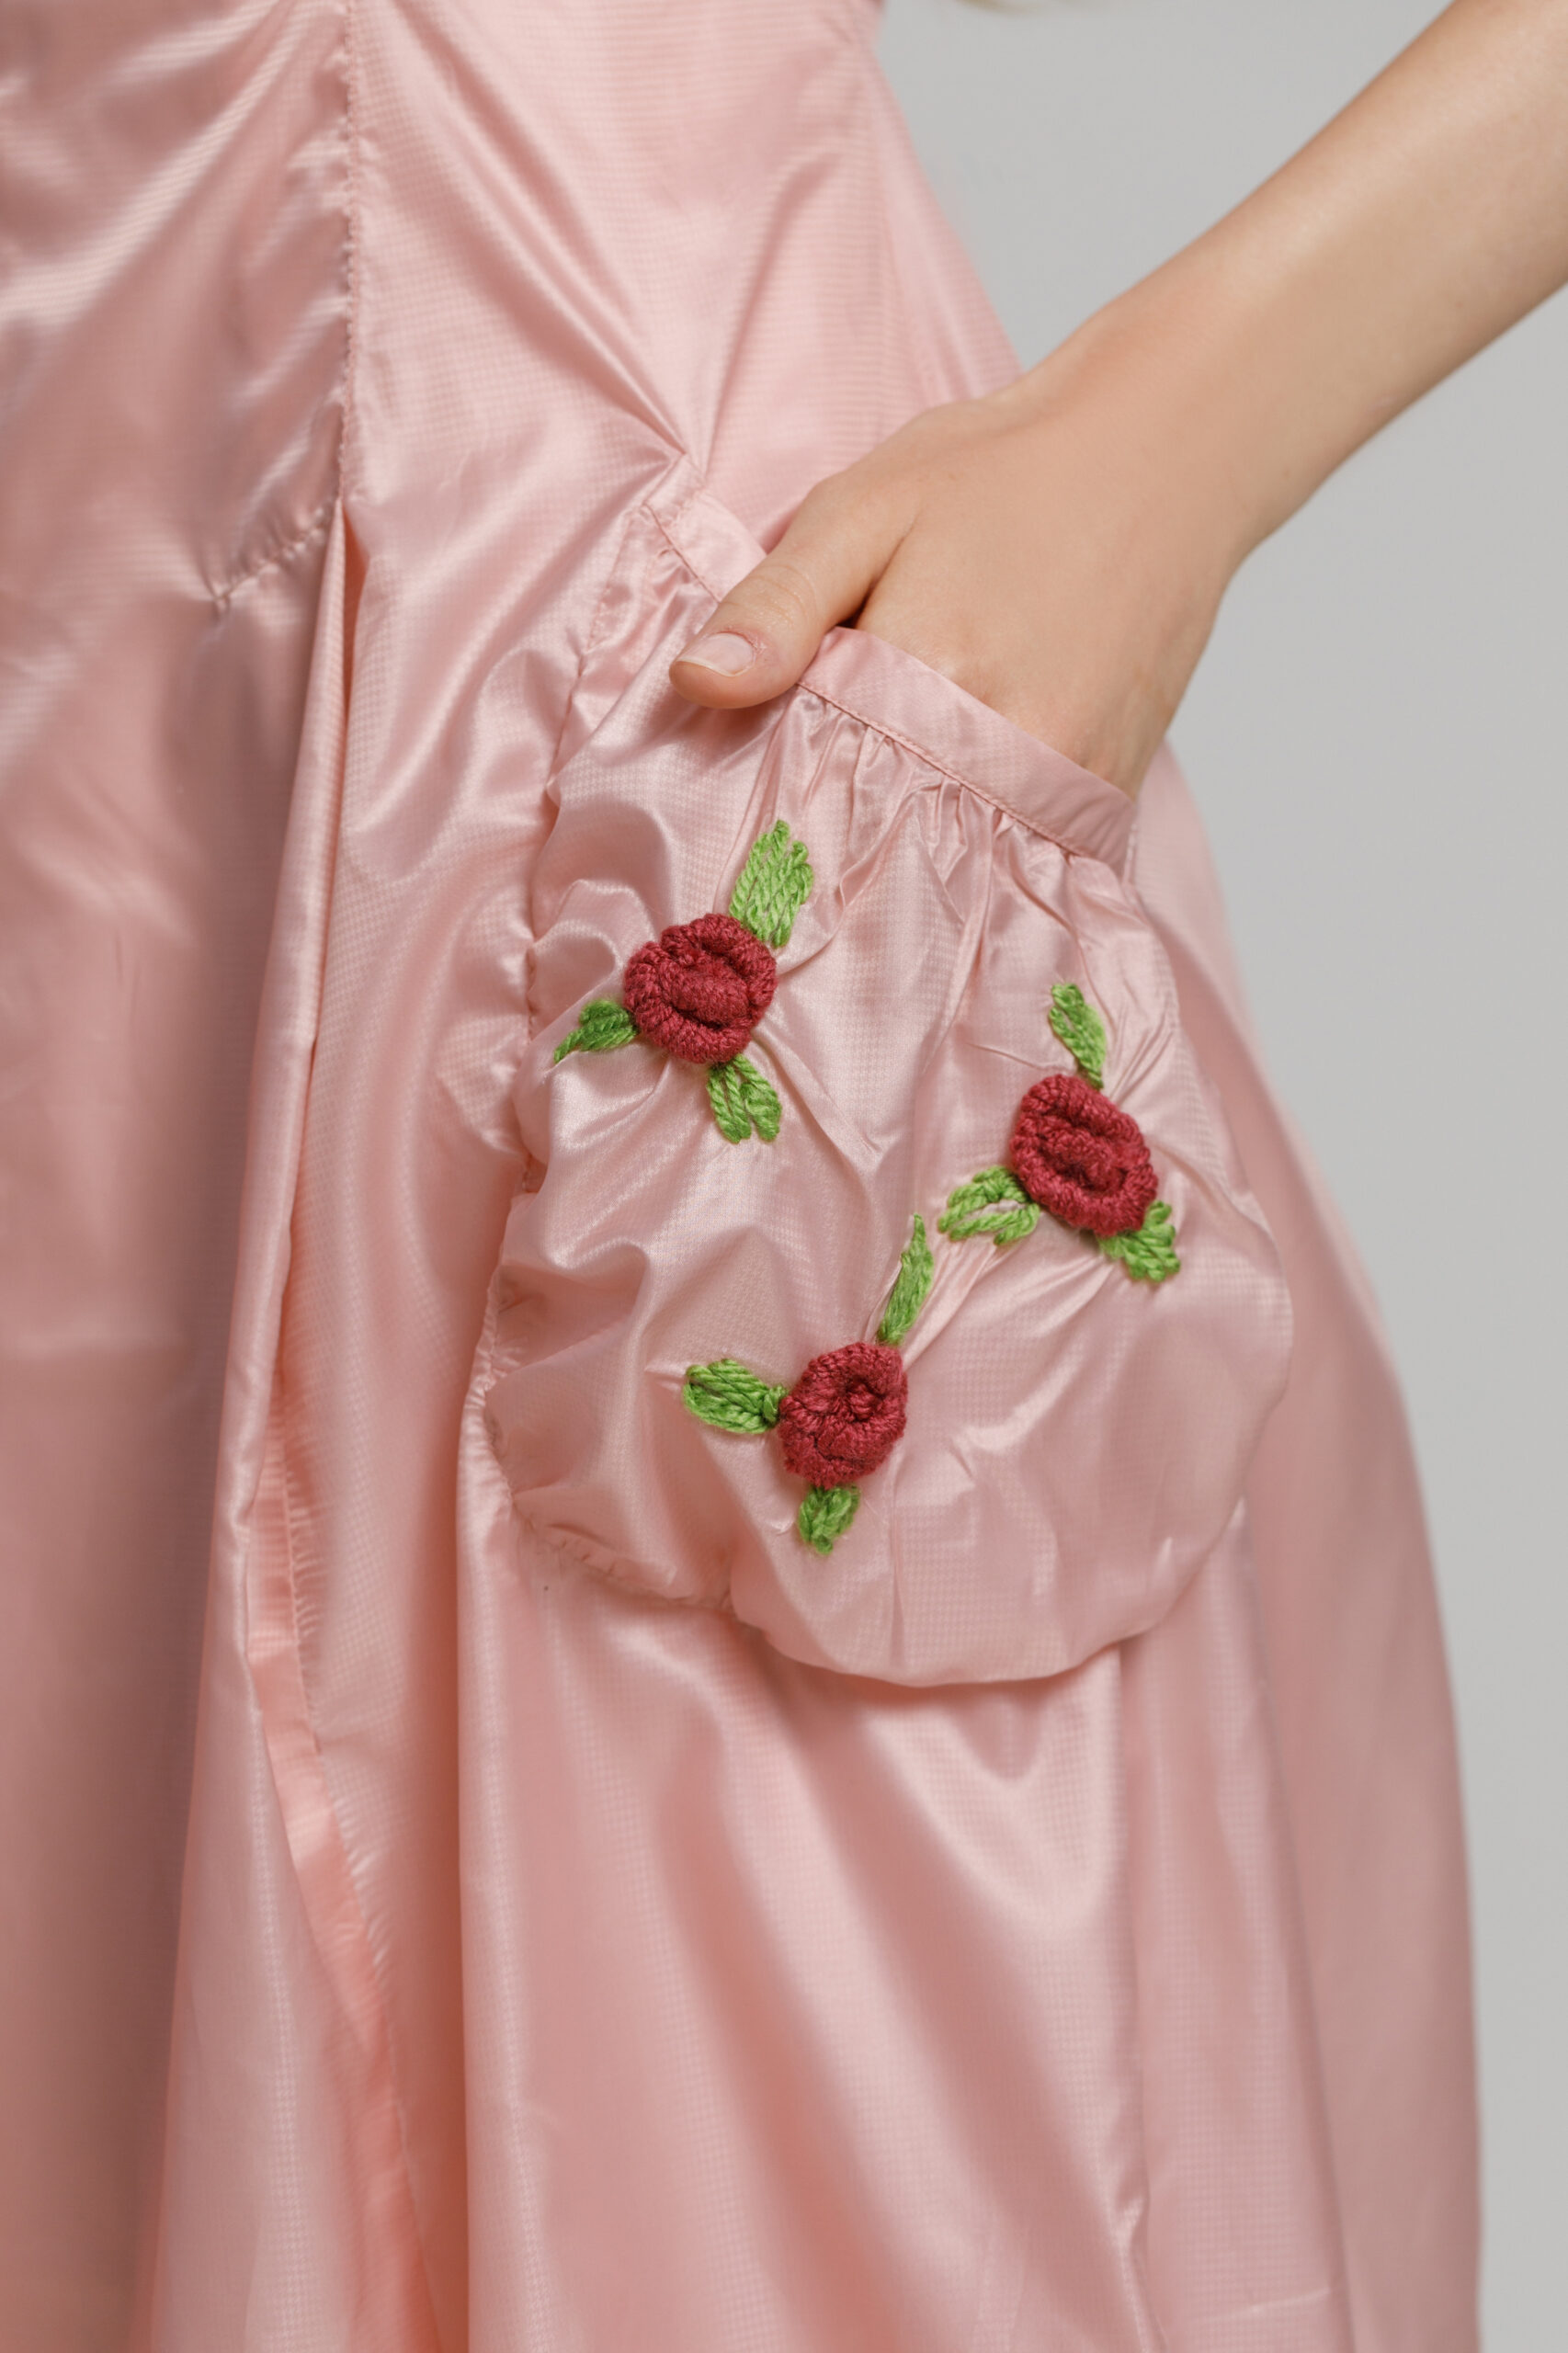 Rochie TARA roz cu broderie. Materiale naturale, design unicat, cu broderie si aplicatii handmade